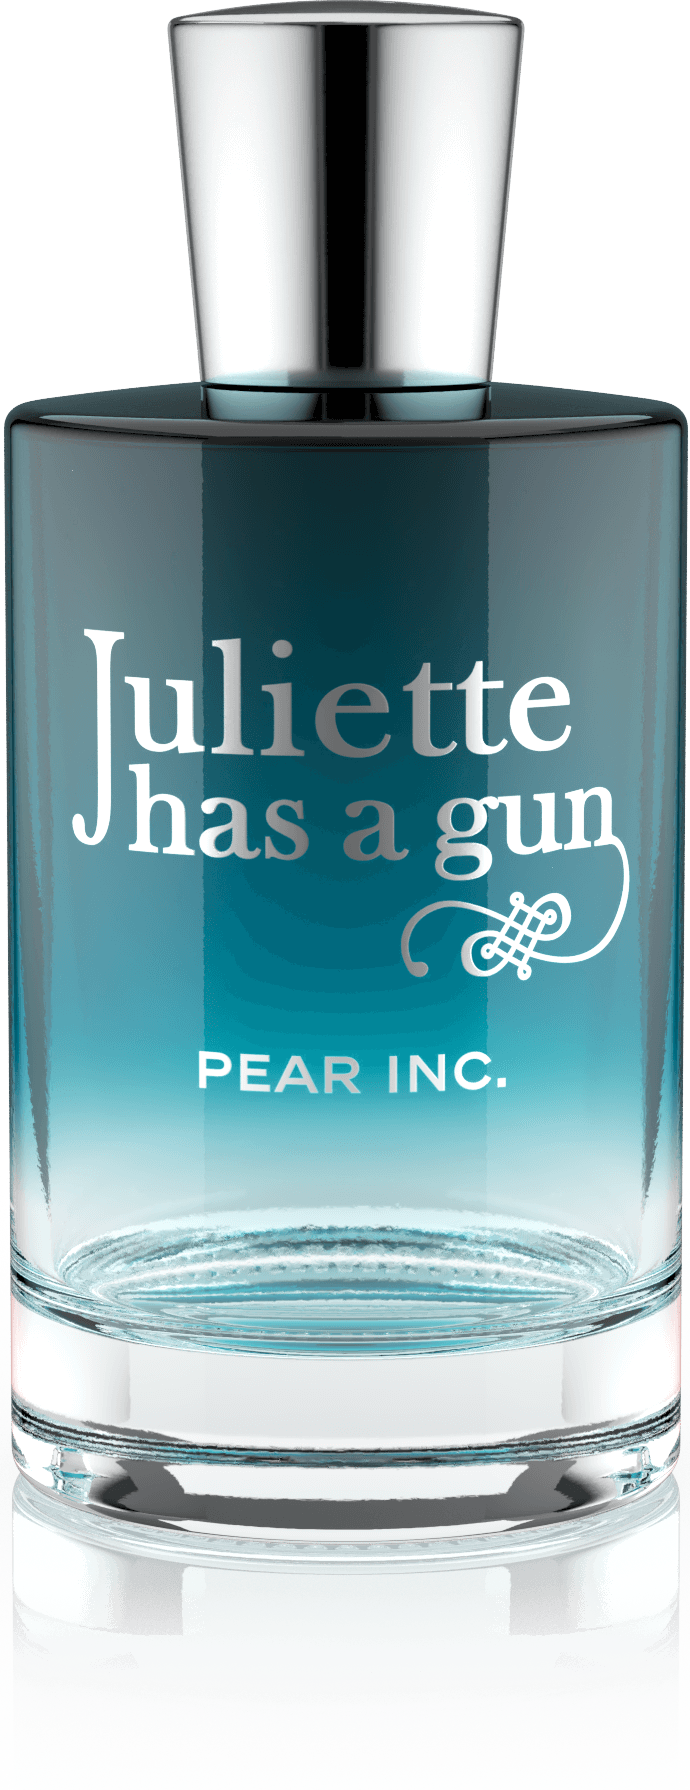 Juliette has a gun Pear INC. Eau de Parfum